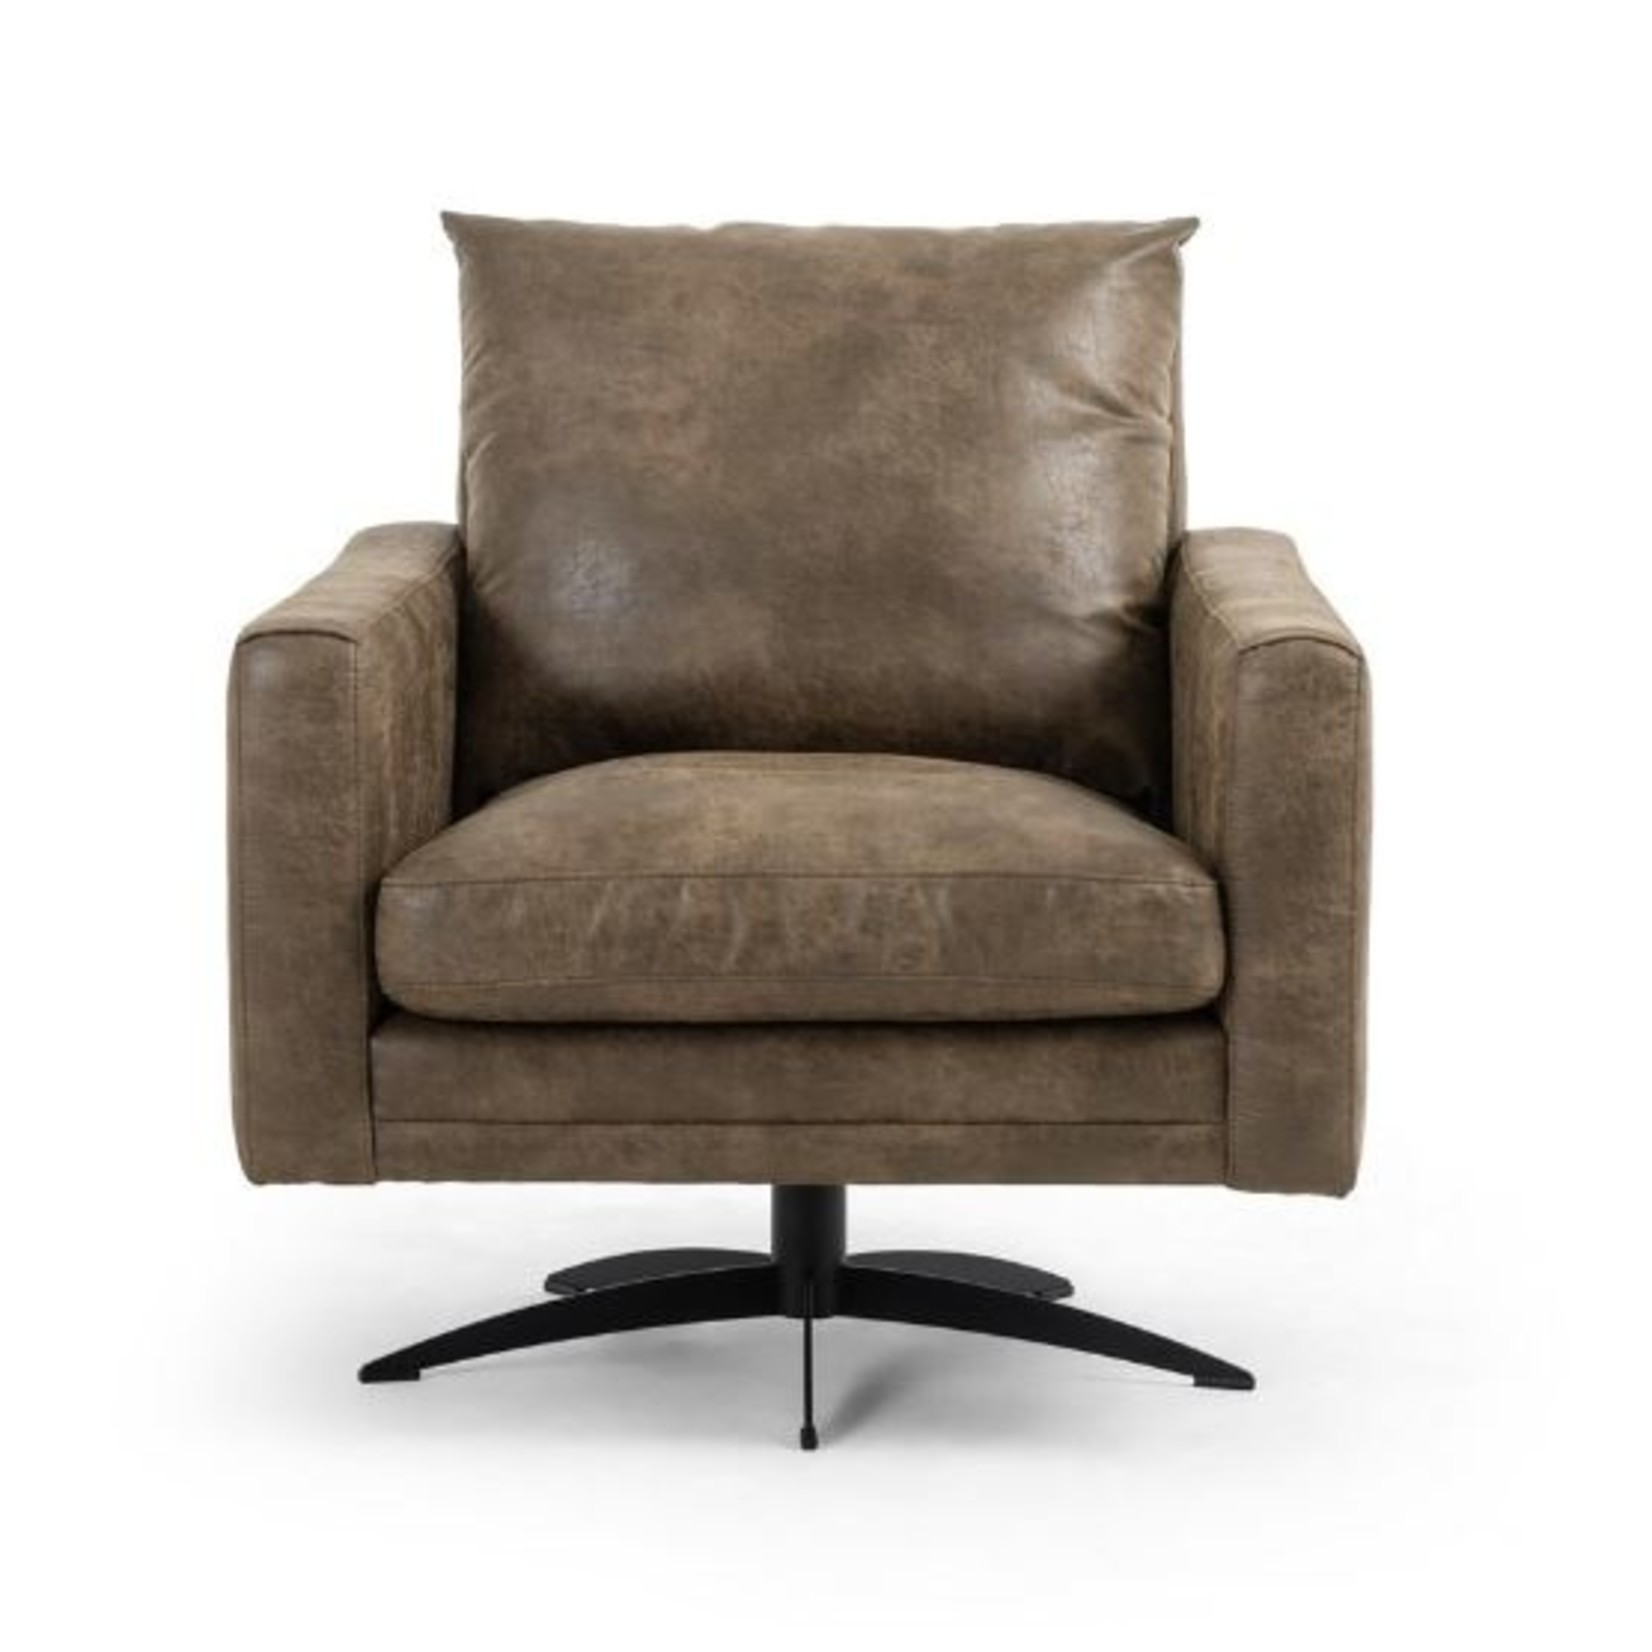 Mickler & Co. Landon Swivel Chair